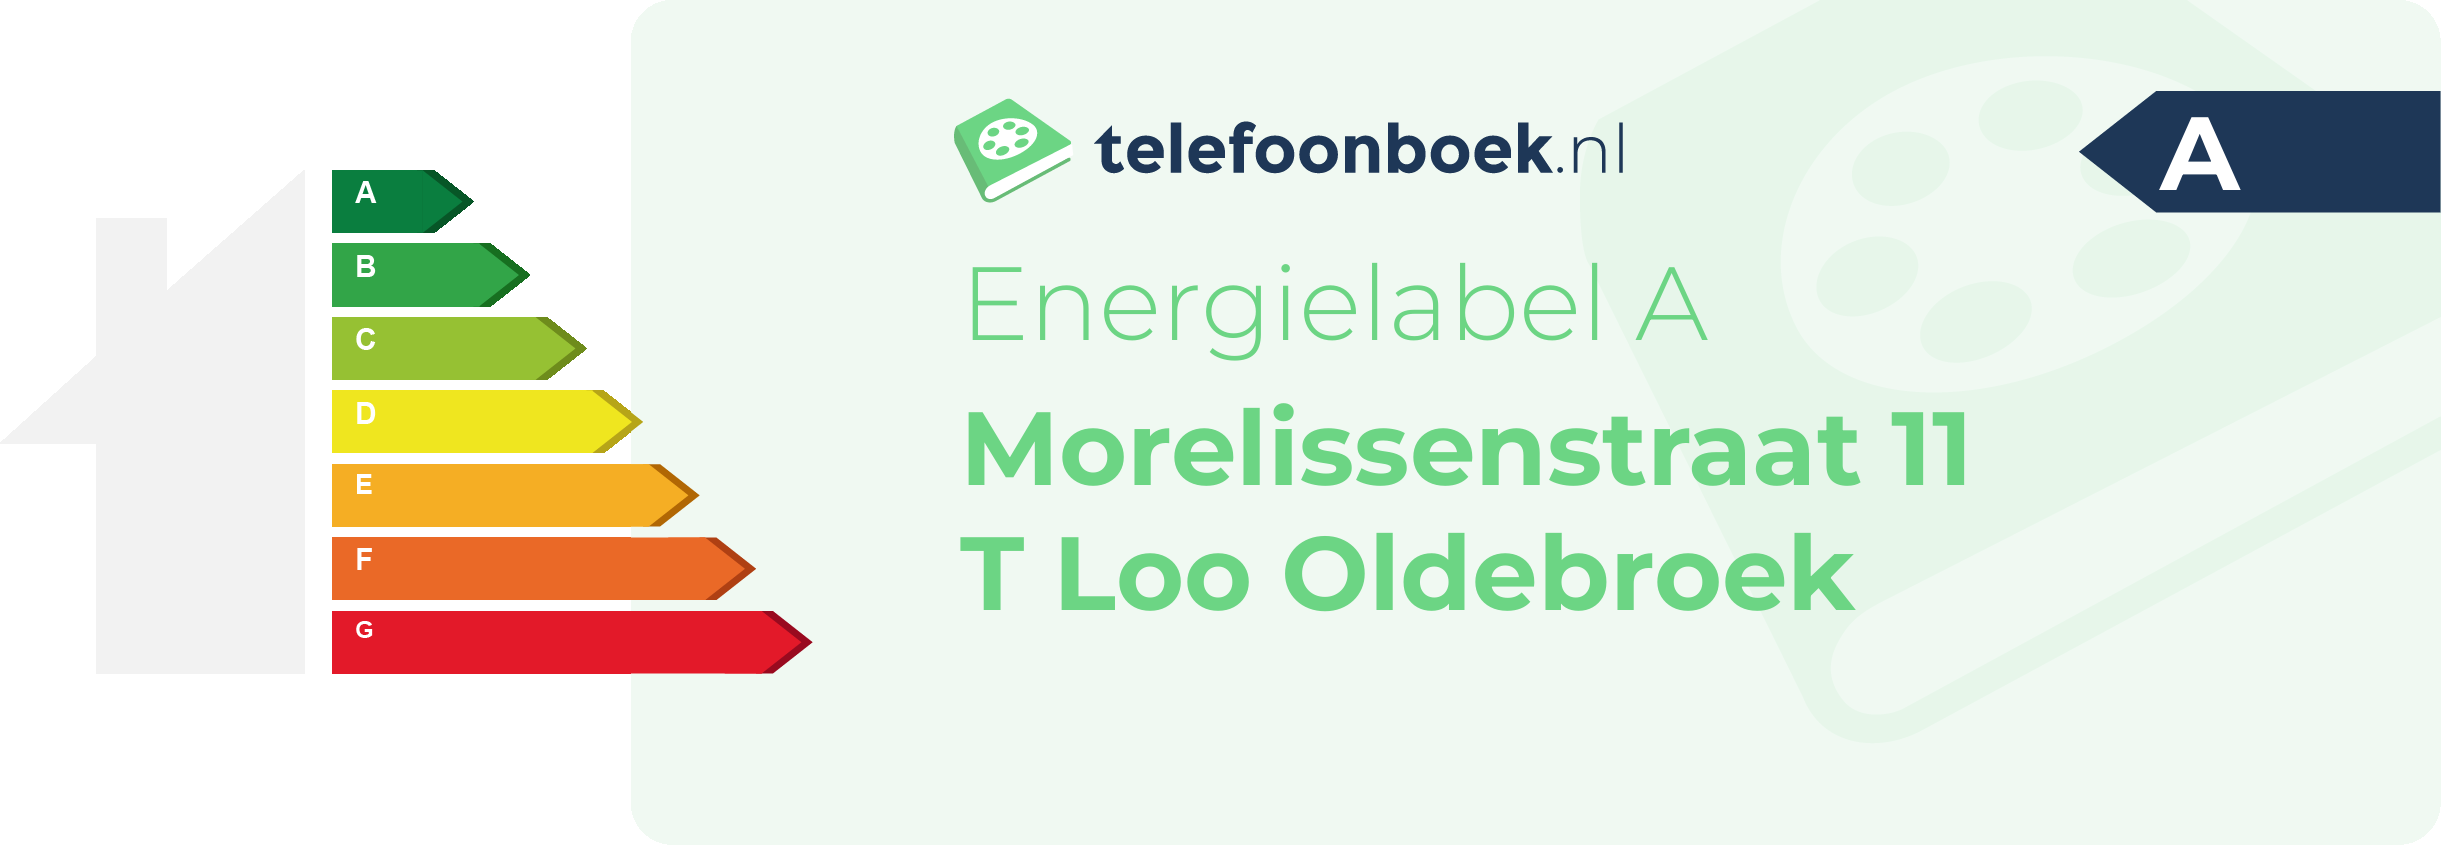 Energielabel Morelissenstraat 11 T Loo Oldebroek